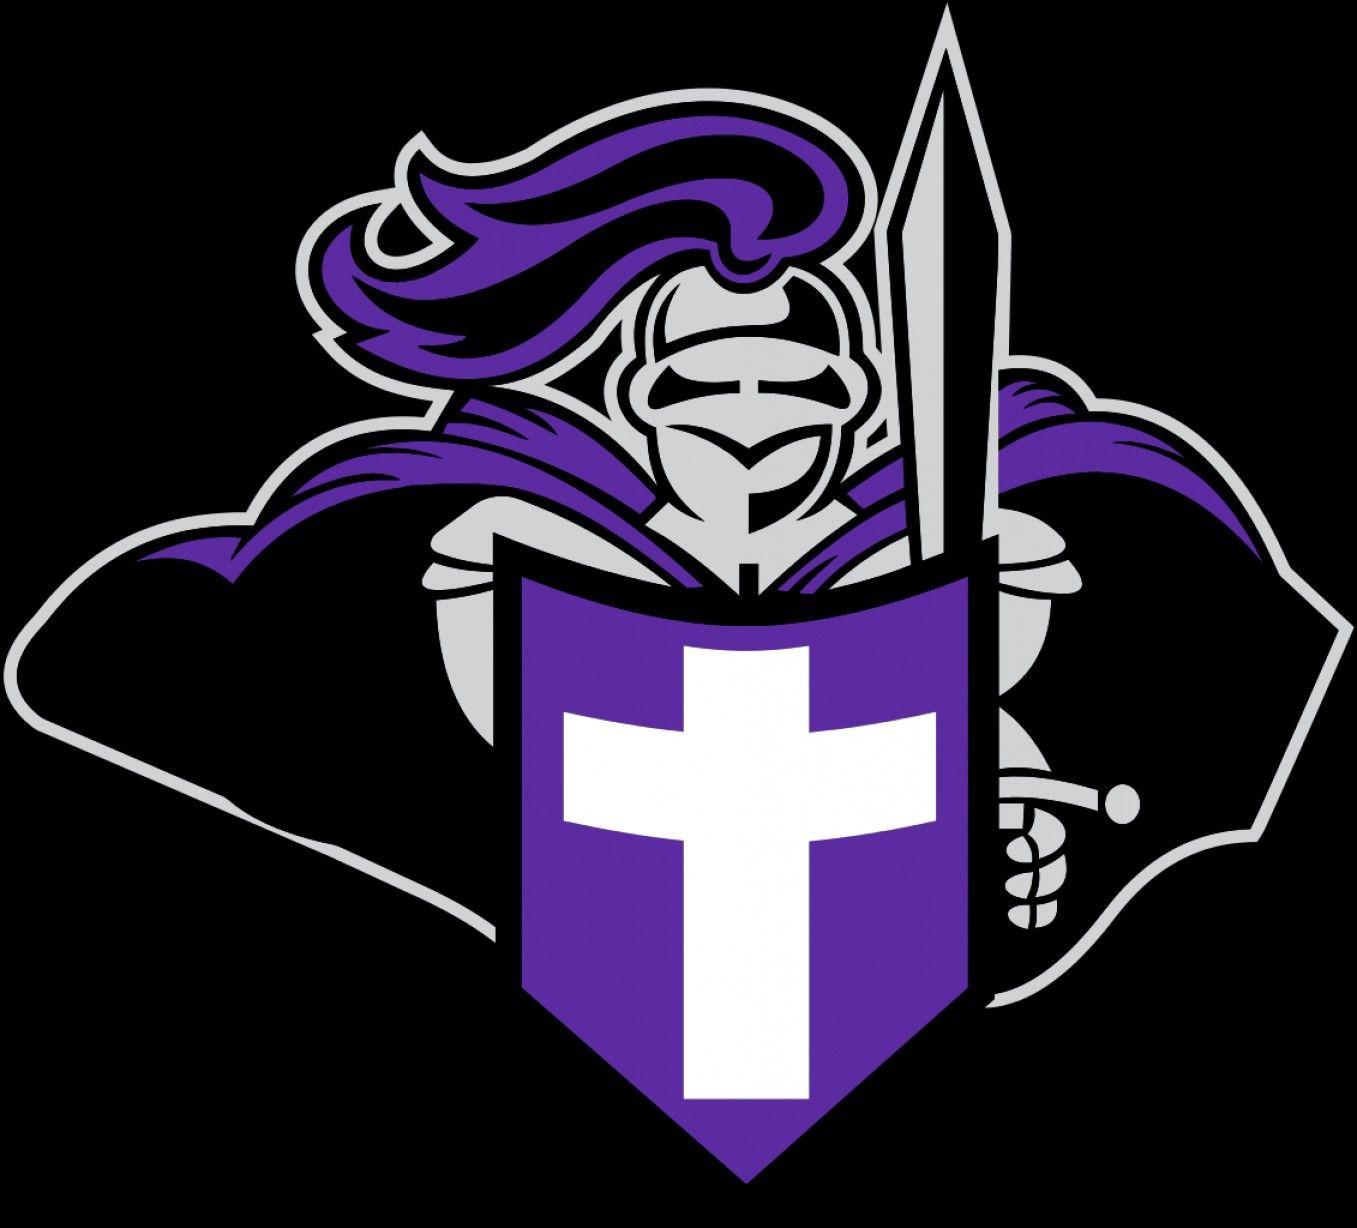 Holy Cross Crusaders Logo - Best Holy Cross Crusaders Image